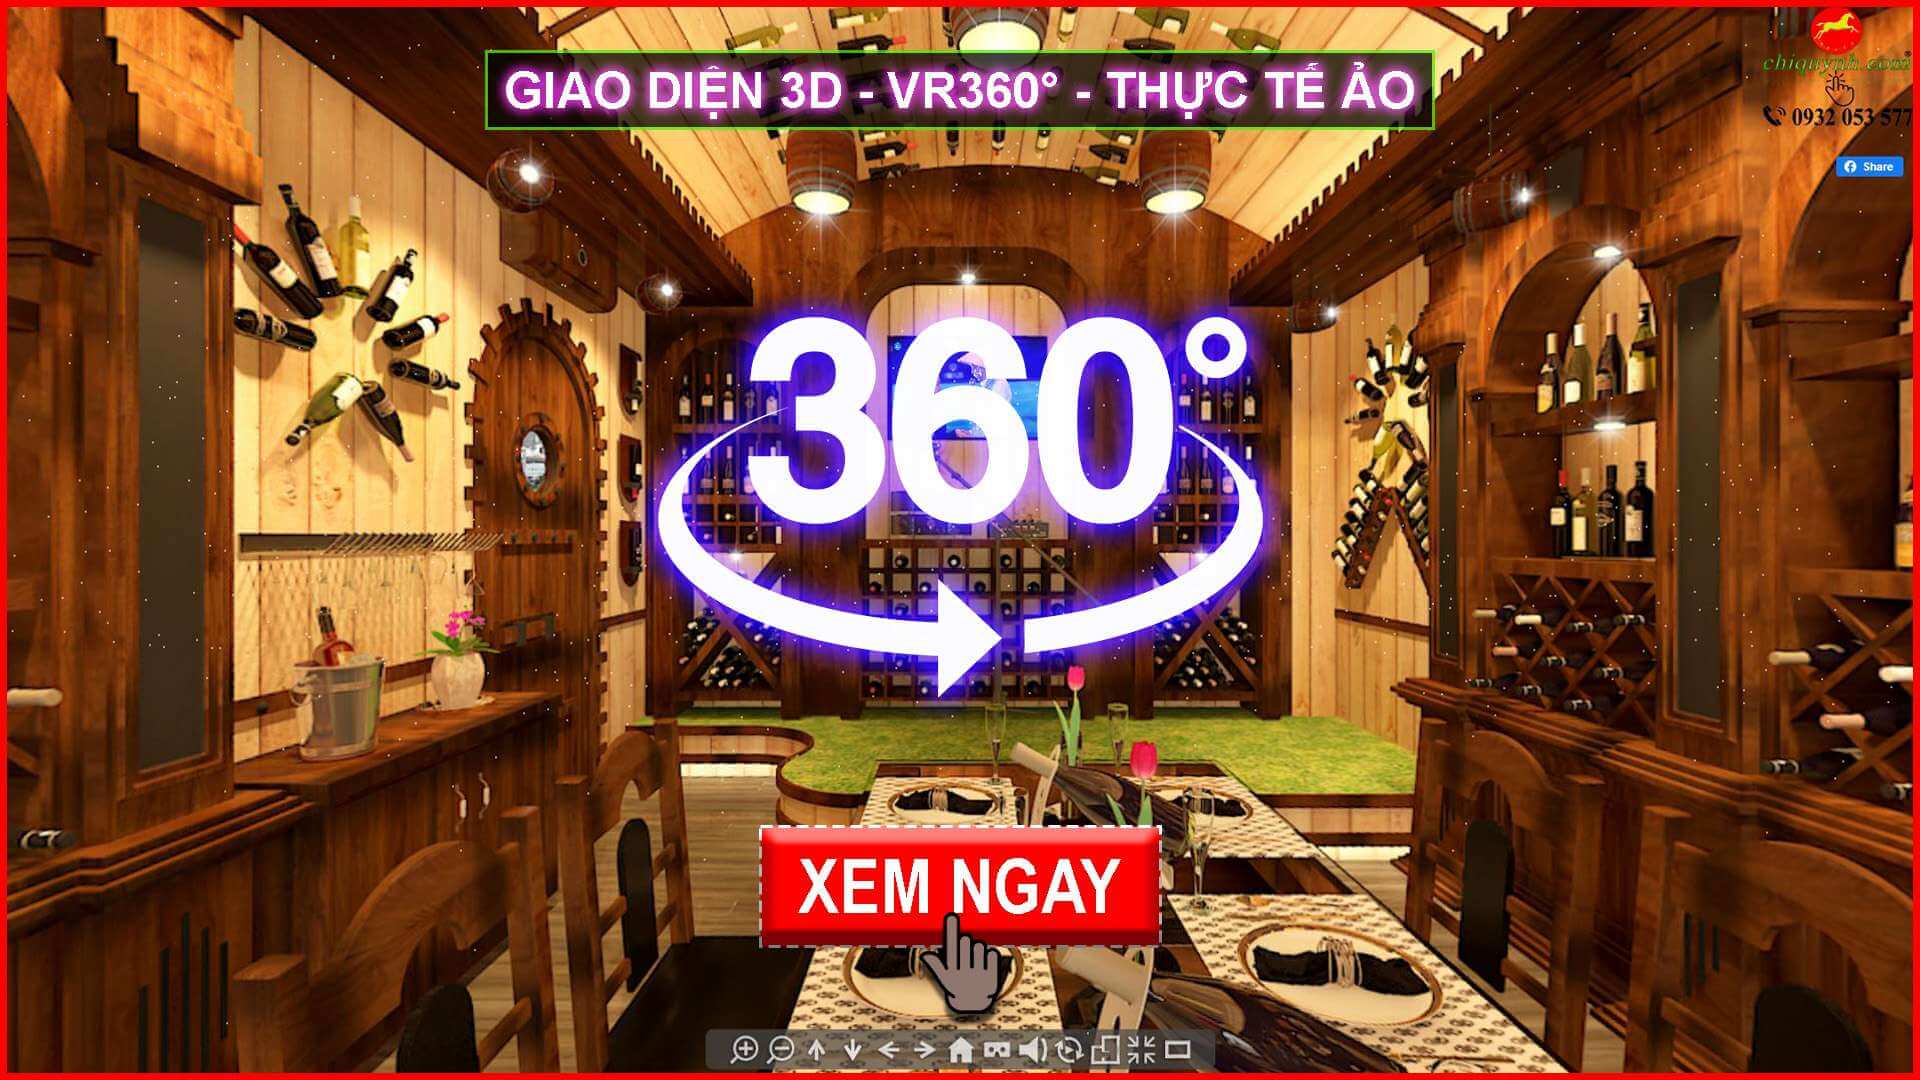 Giao diện 3D VR360 Thực tế ảo 2022